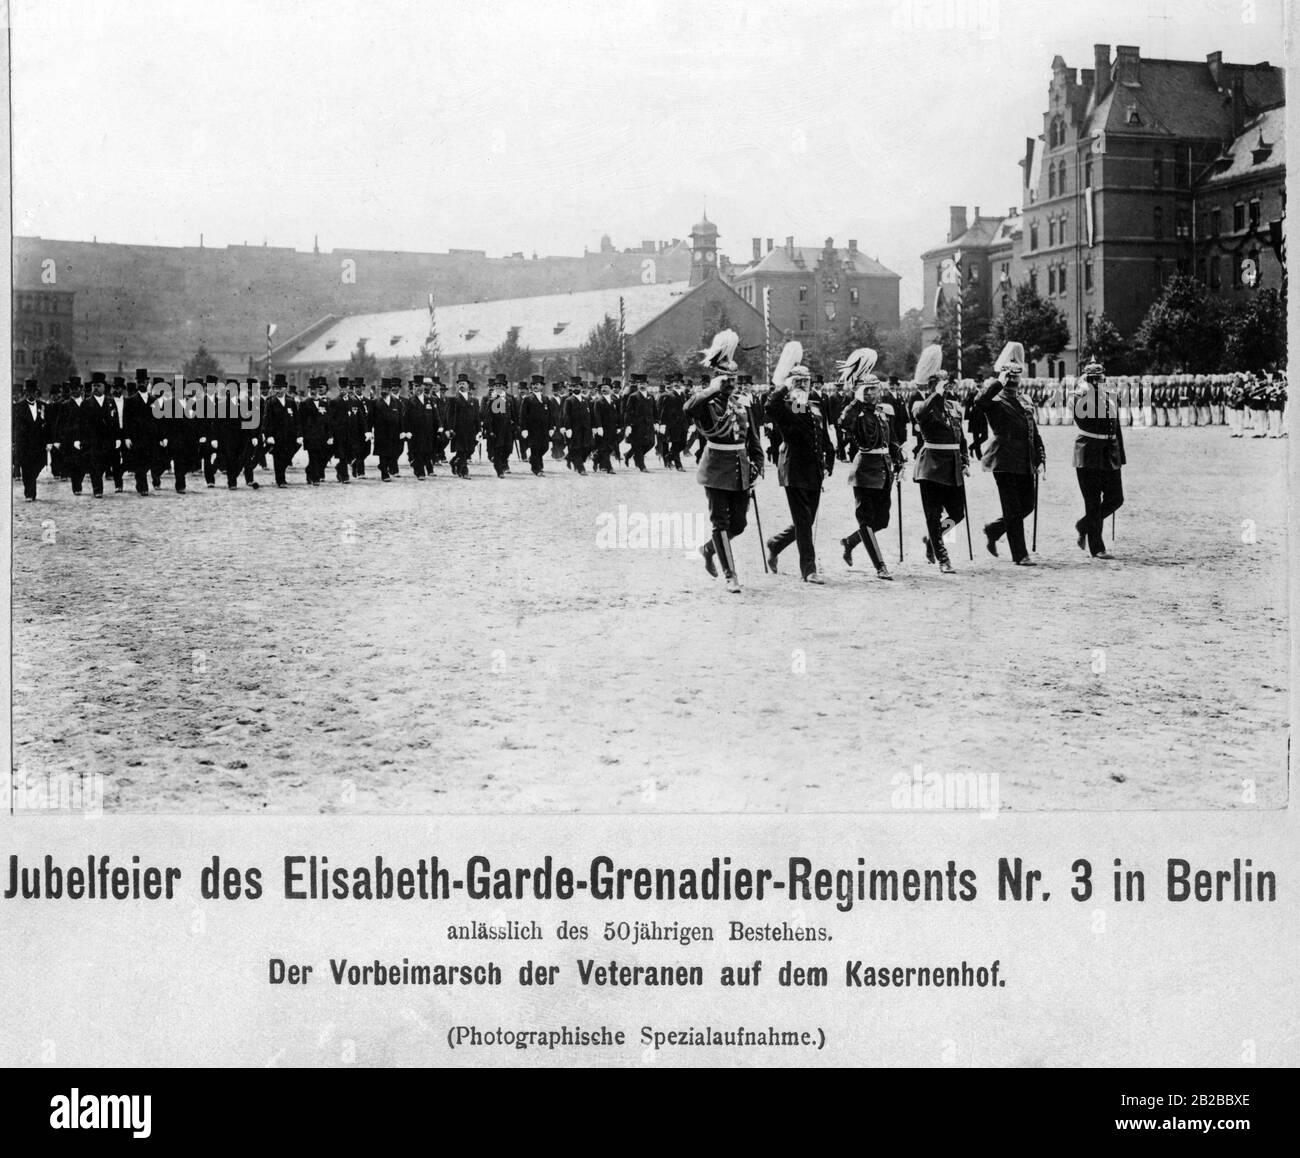 A l'occasion du 50ème anniversaire de la marche des anciens combattants Elisabeth Garde-Grenadier Nr. 3 sur la cour de la caserne à Berlin. Banque D'Images